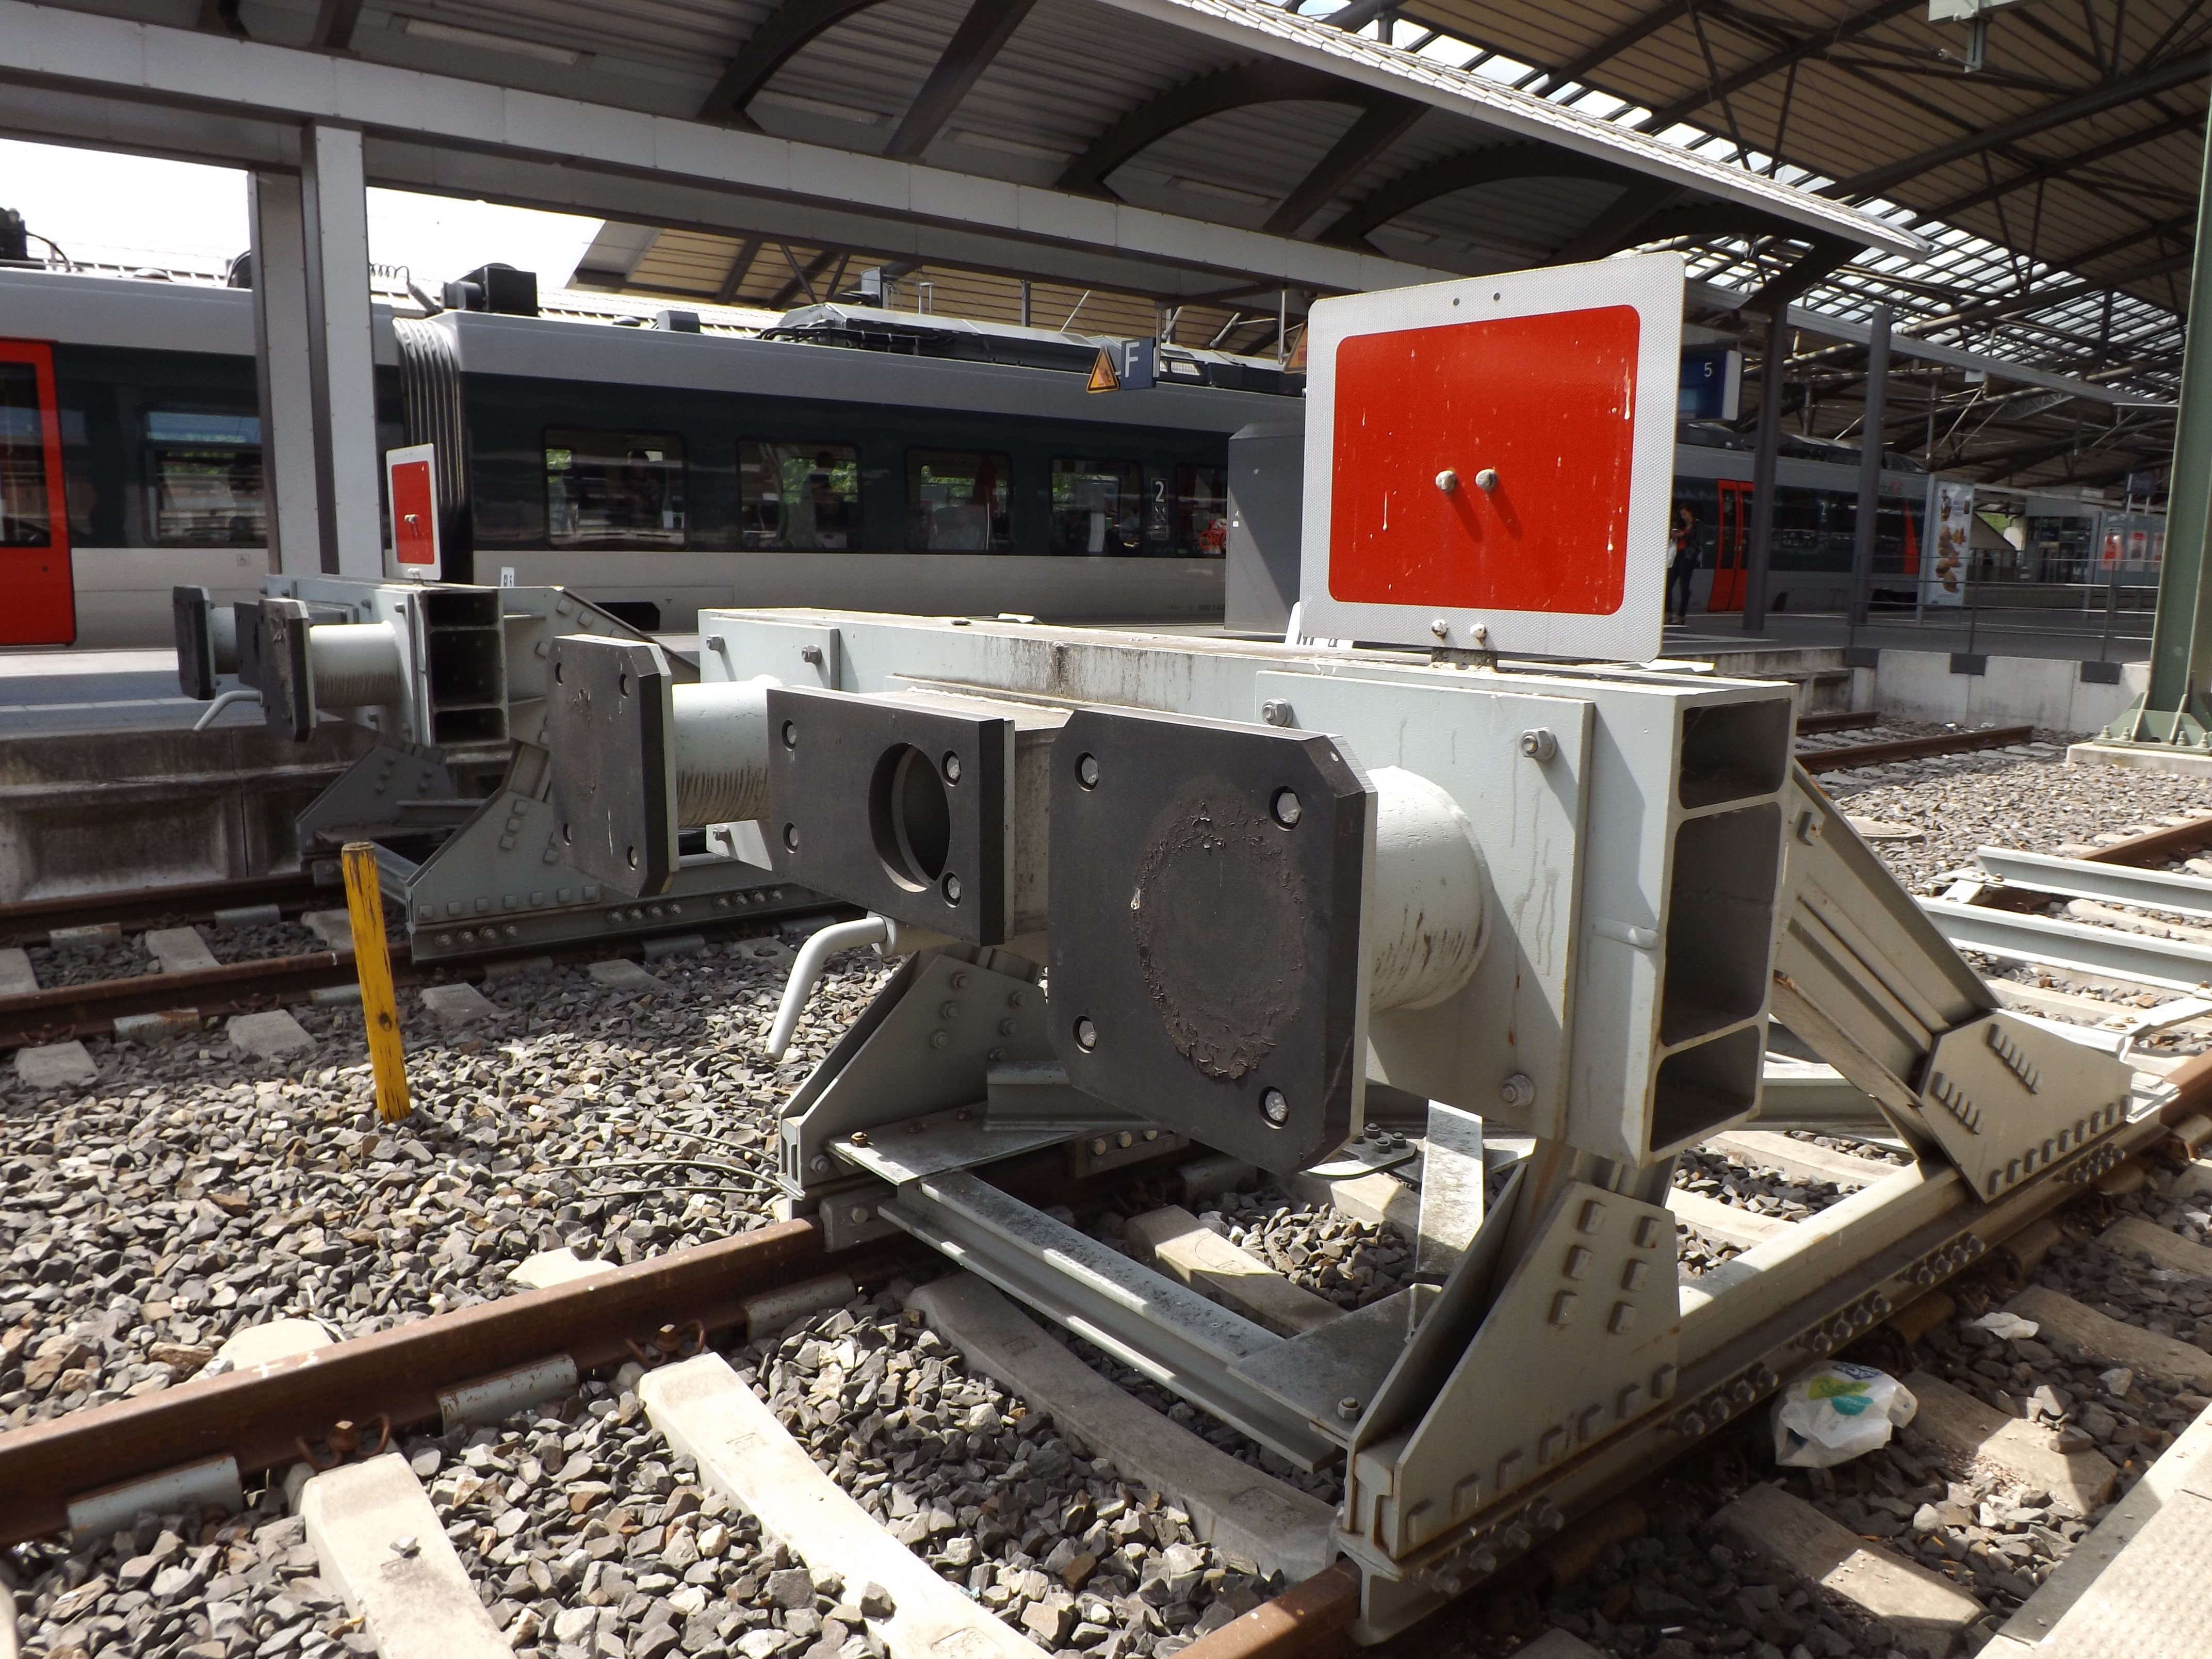 Ein Prellbock im Bahnhof - symbolisch für den Investitionsstau in den Verkehrsträger Schiene. (Foto: © Michael Loeper / pixelio.de)